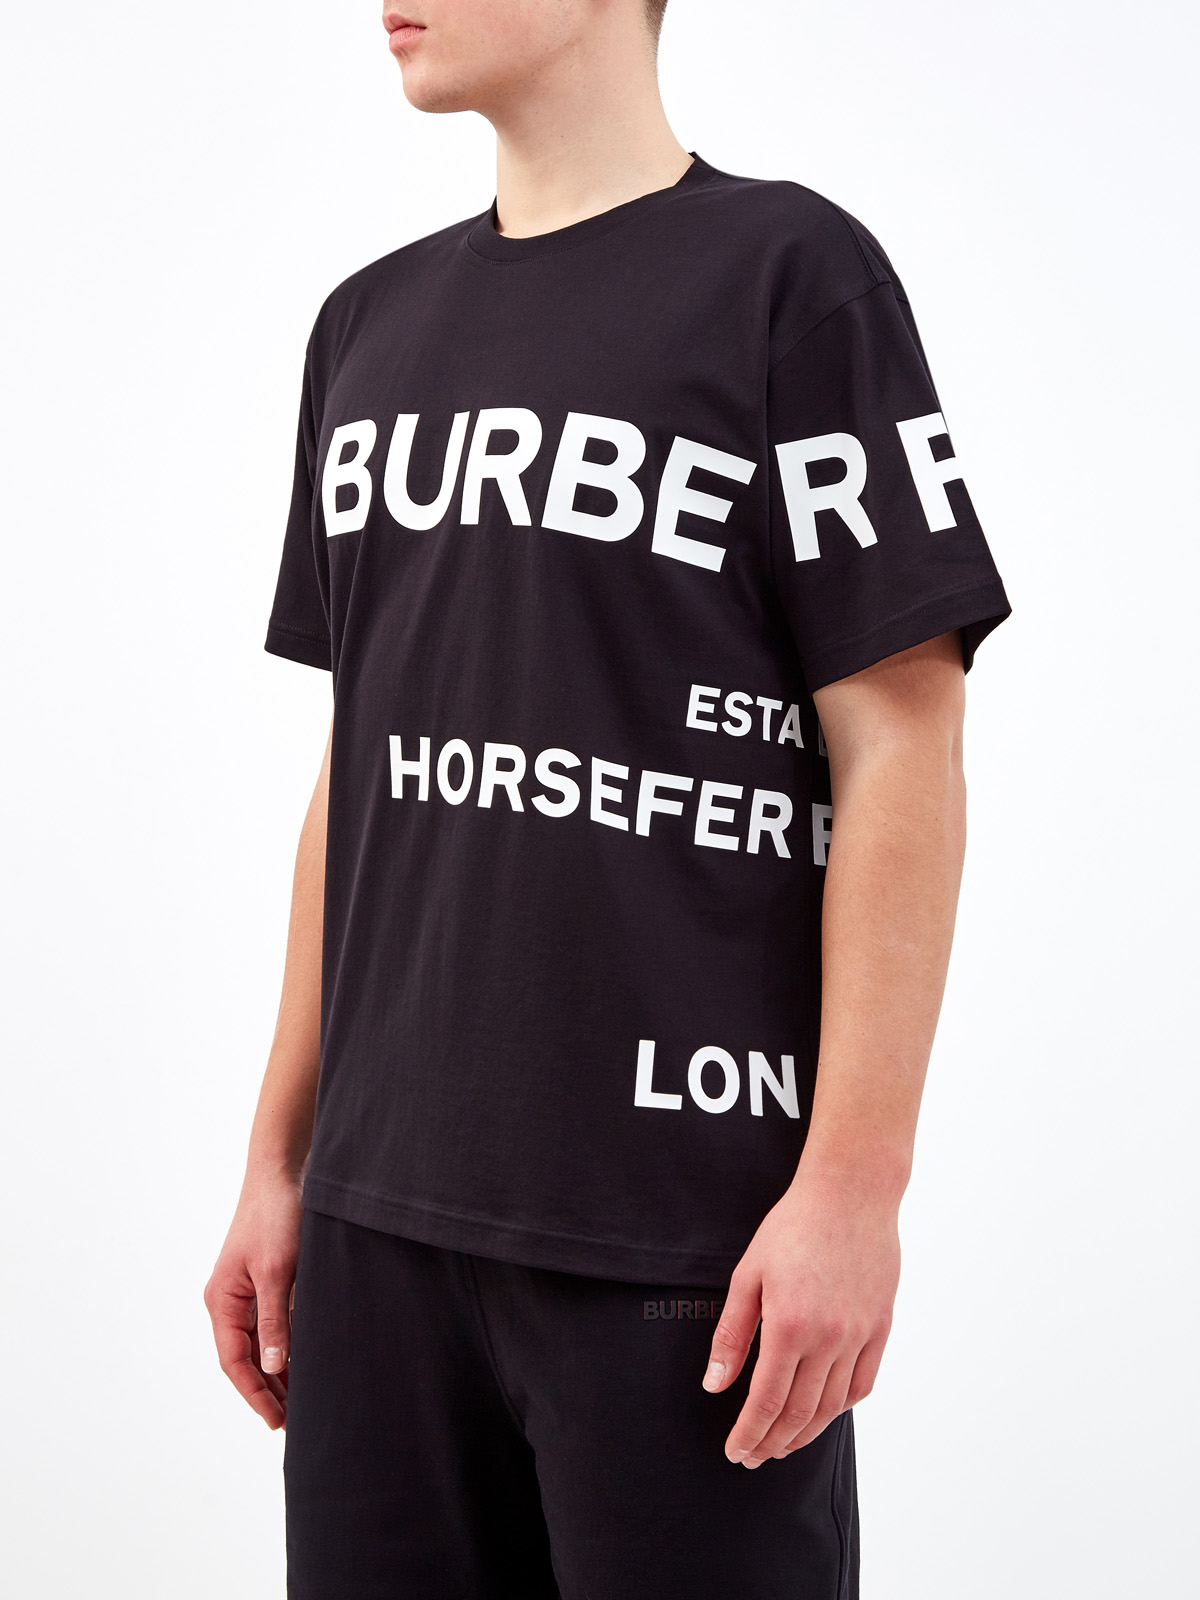 Хлопковая футболка из джерси с контрастным принтом Horseferry BURBERRY, цвет черный, размер S;L;2XL;3XL;M - фото 3